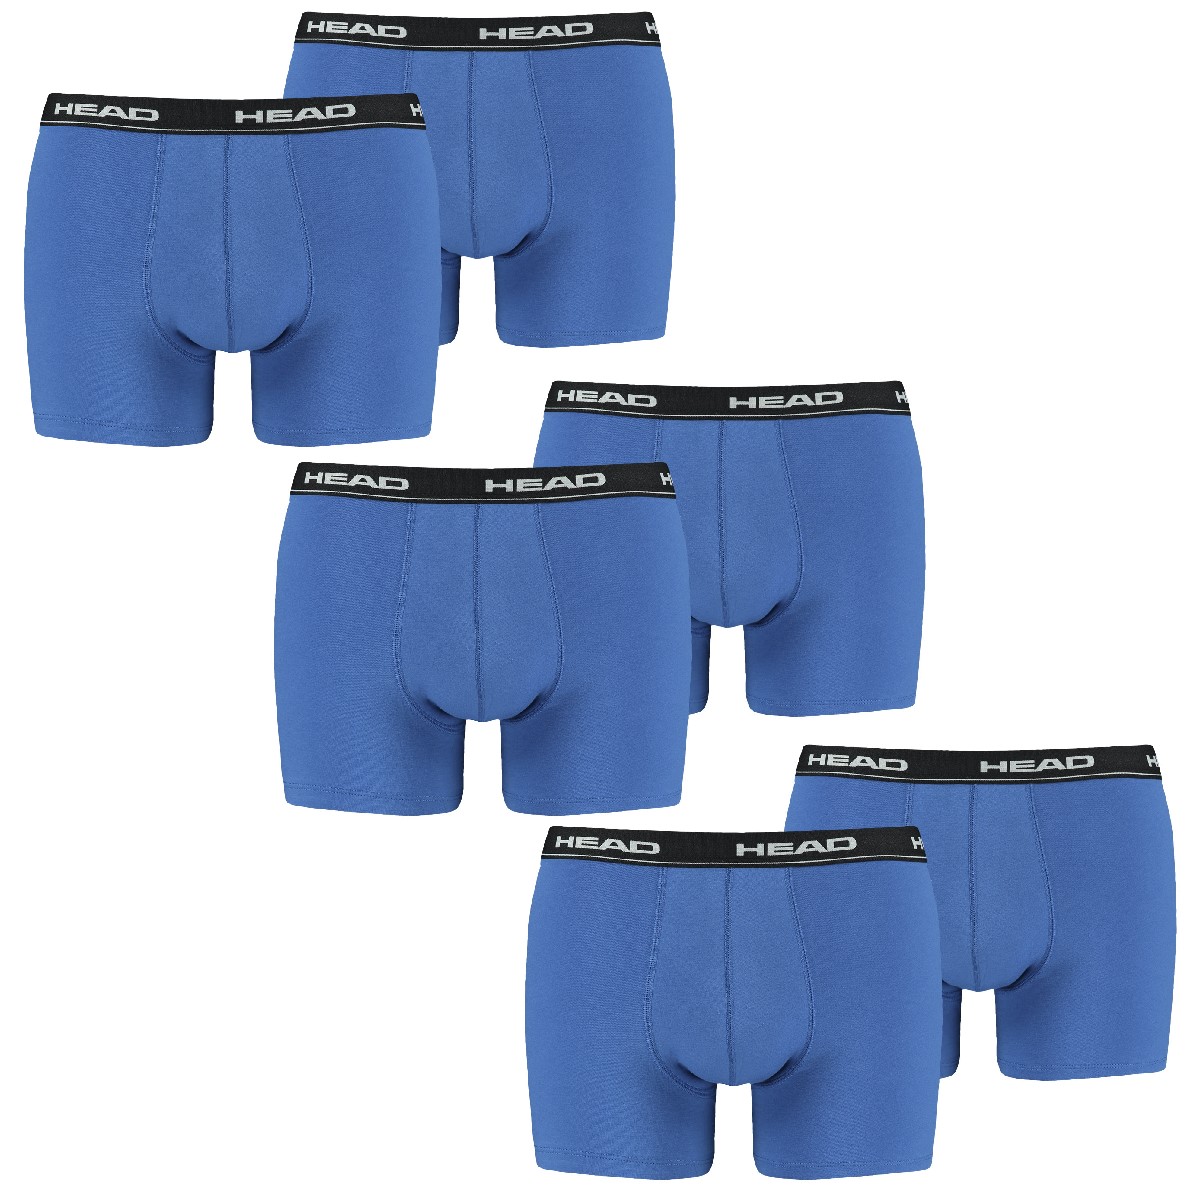 MULTIPACK BOXERS 6 PACK Head Herren Boxer Boxershorts Basic Pant 891003001 Unterwäsche XL, 021 - blue / black